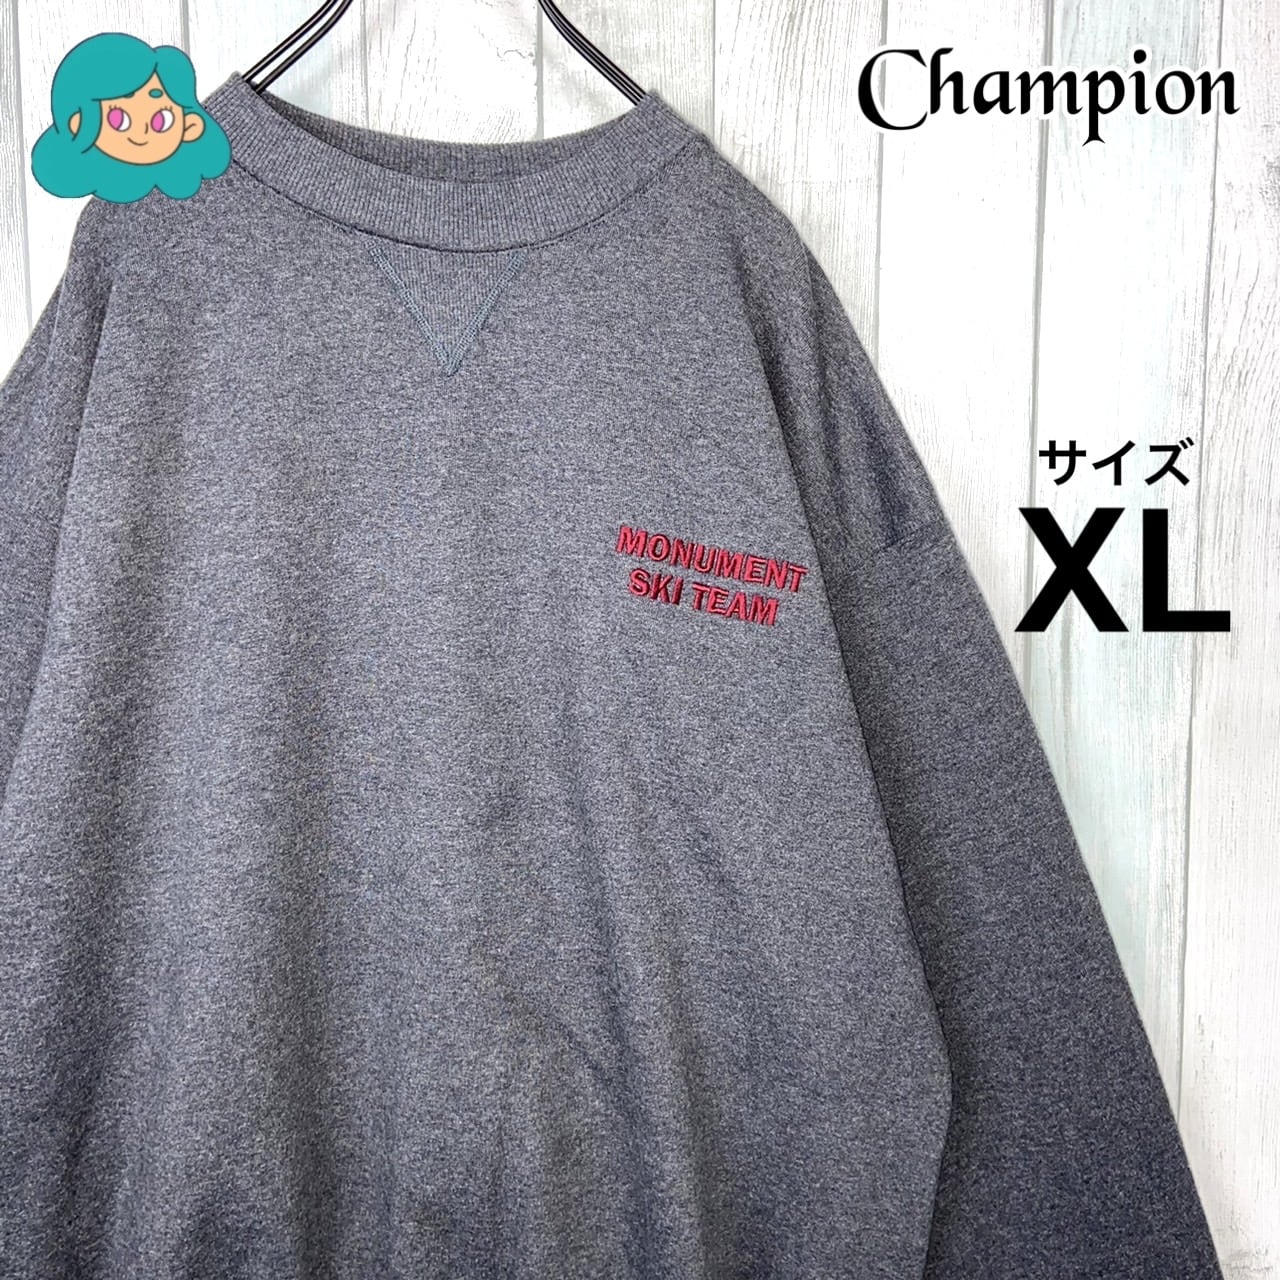 【大人気デザイン】champion チャンピオン プルオーバー XL 刺繍ロゴ200円引き〜9999円